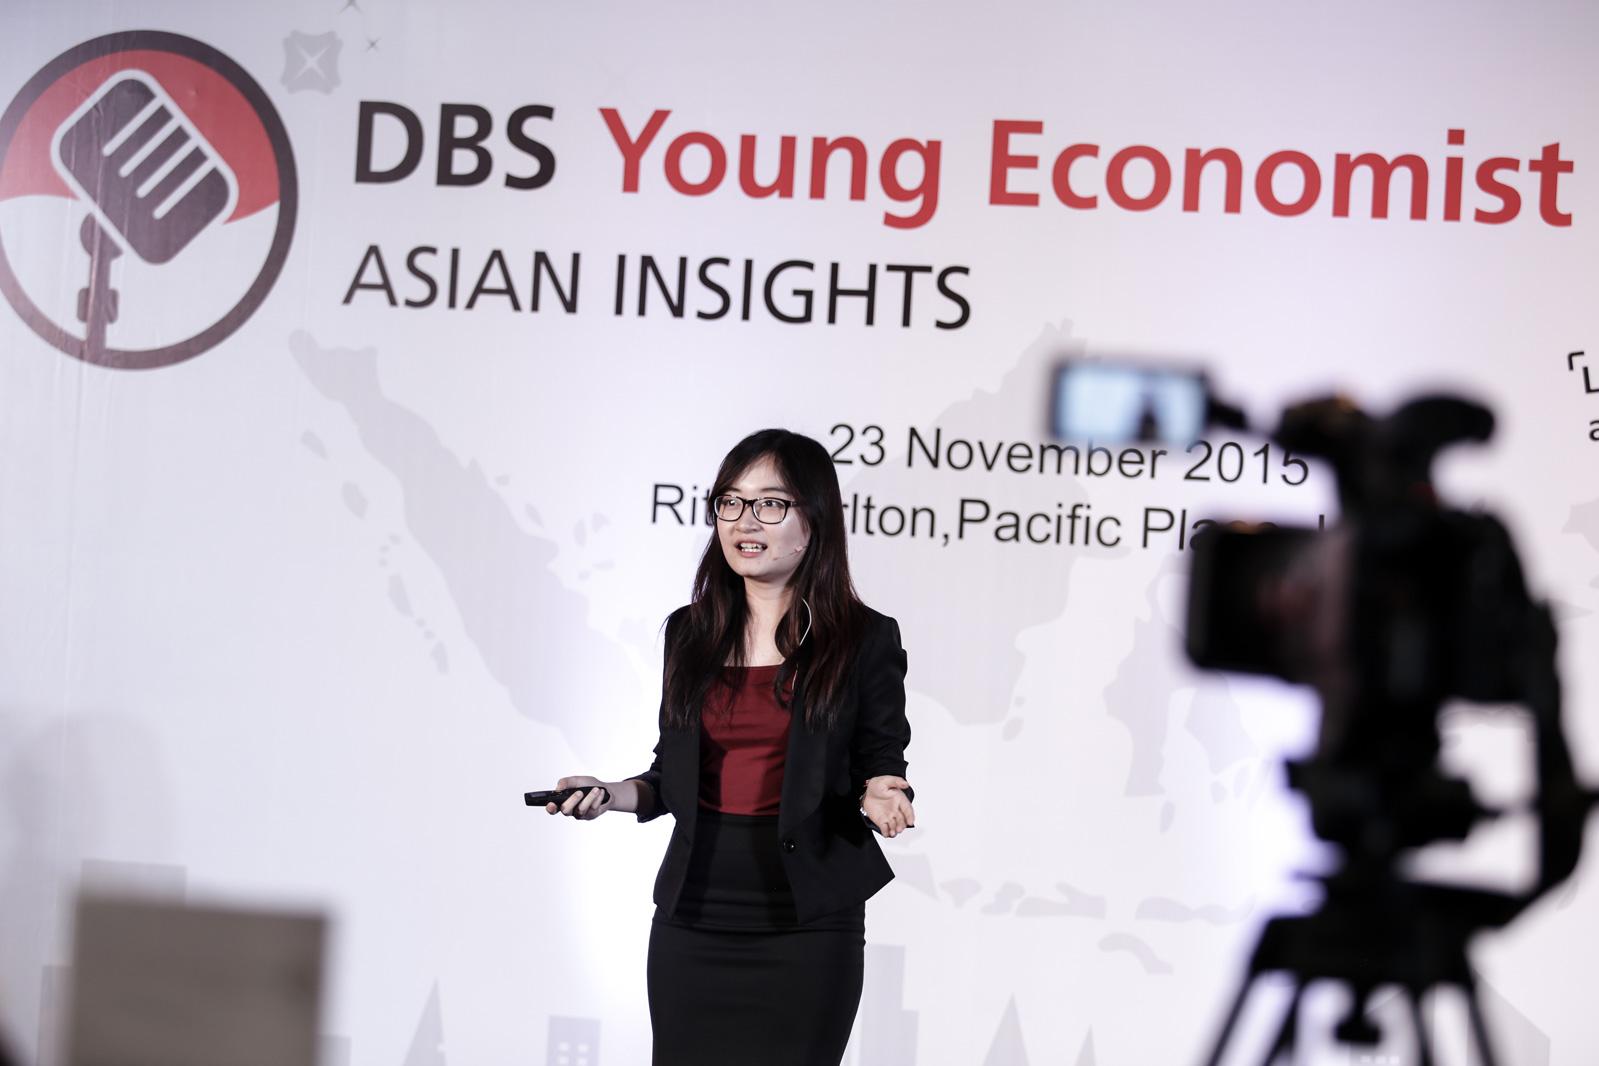 Peserta DBS Young Economist Stand-Up Claristy Univ. Indonesia, Depok mempresentasikan paparannya di hadapan juri yang terdiri dari Faisal Basri, Alanda Kaliza dan Gundy Cahyadi yang diadakan oleh Bank DBS bekerja sama dengan Katadata di Jakarta, Senin (23/11).